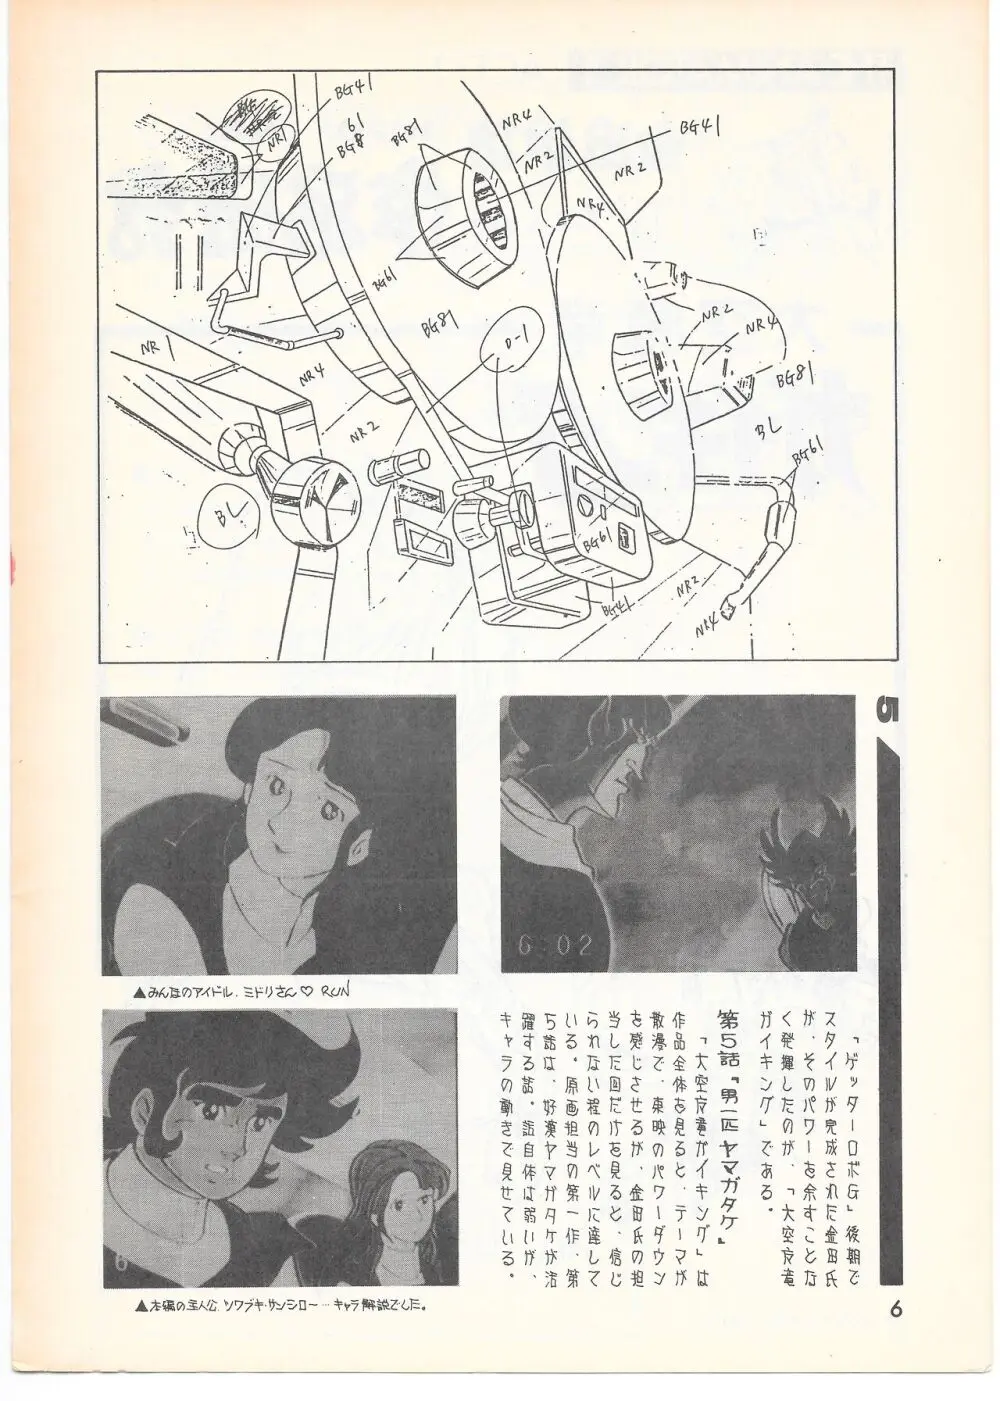 THE ANIMATOR 1 金田伊功特集号 5ページ